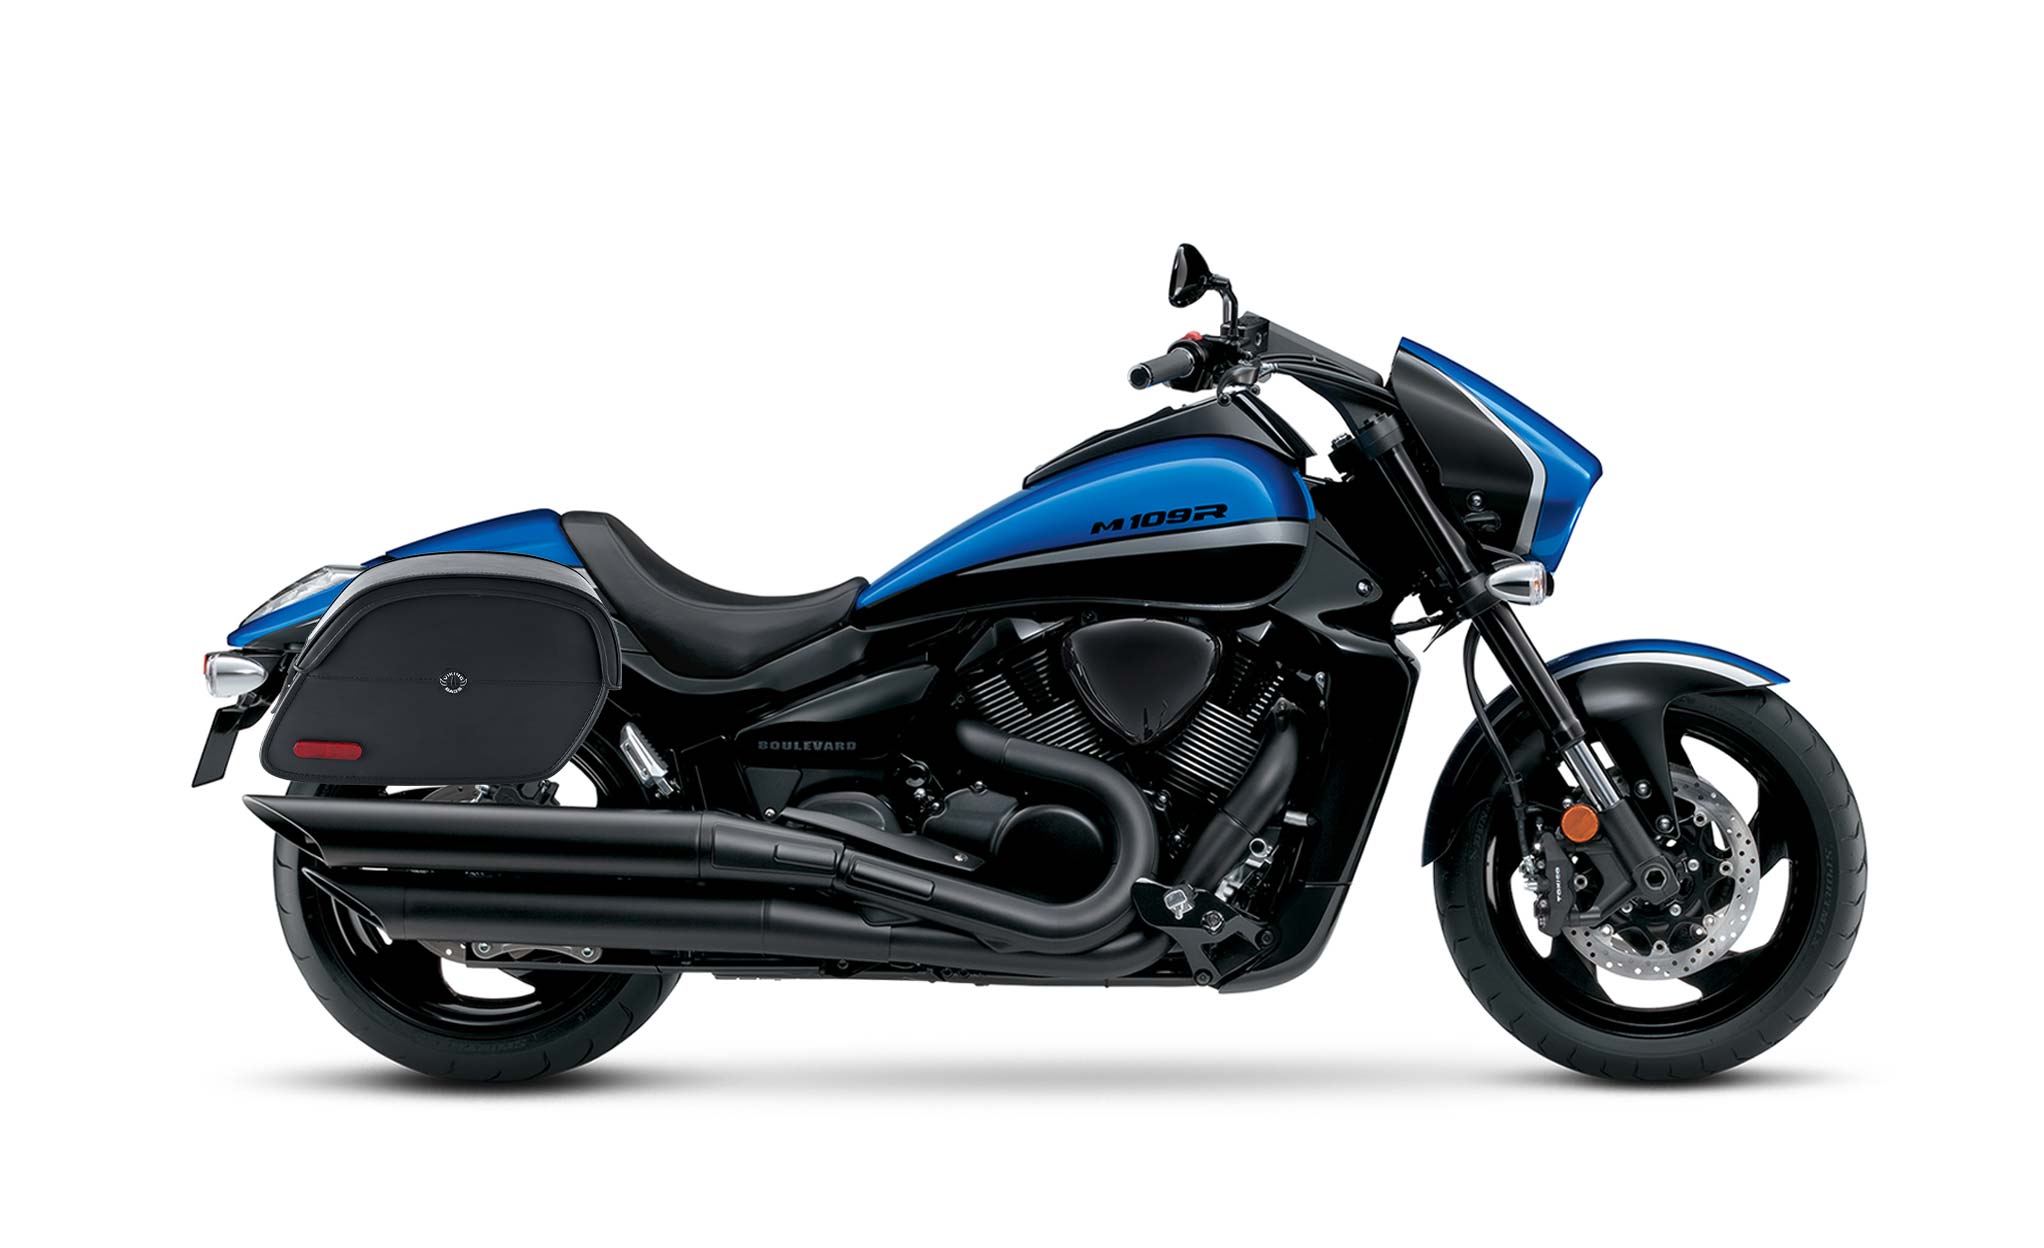 Viking California Large Suzuki Boulevard M109 Vzr1800 Leather Motorcycle Saddlebags on Bike Photo @expand